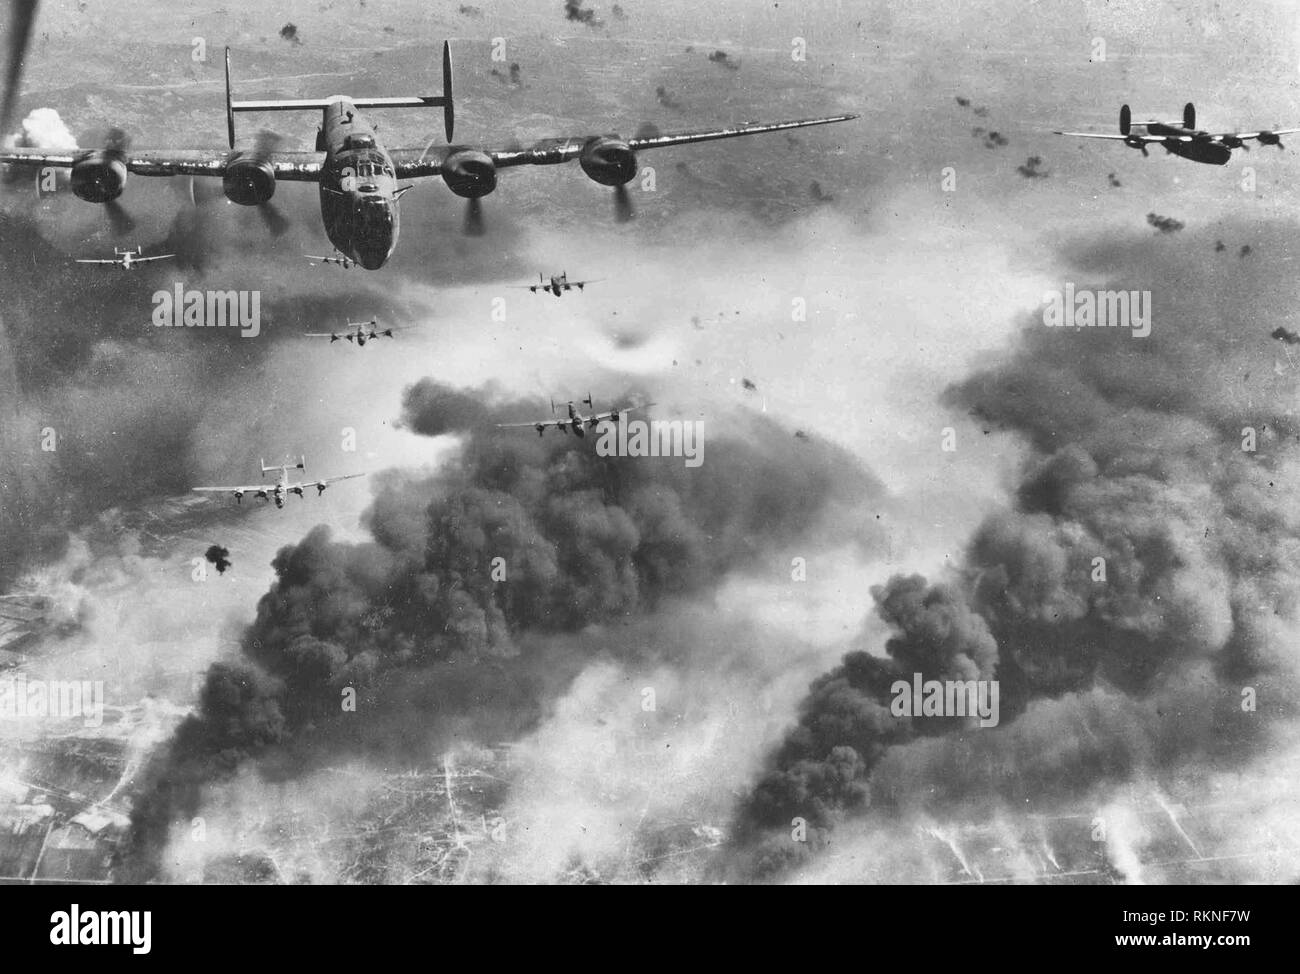 B-24 Liberator attraverso flak e sulla distruzione create dai precedenti ondate di bombardieri, questi xv Air Force B-24s lasciano Ploesti, Romania, dopo una lunga serie di attacchi contro il n. 1 olio target in Europa. Agosto 1, 1943 Foto Stock